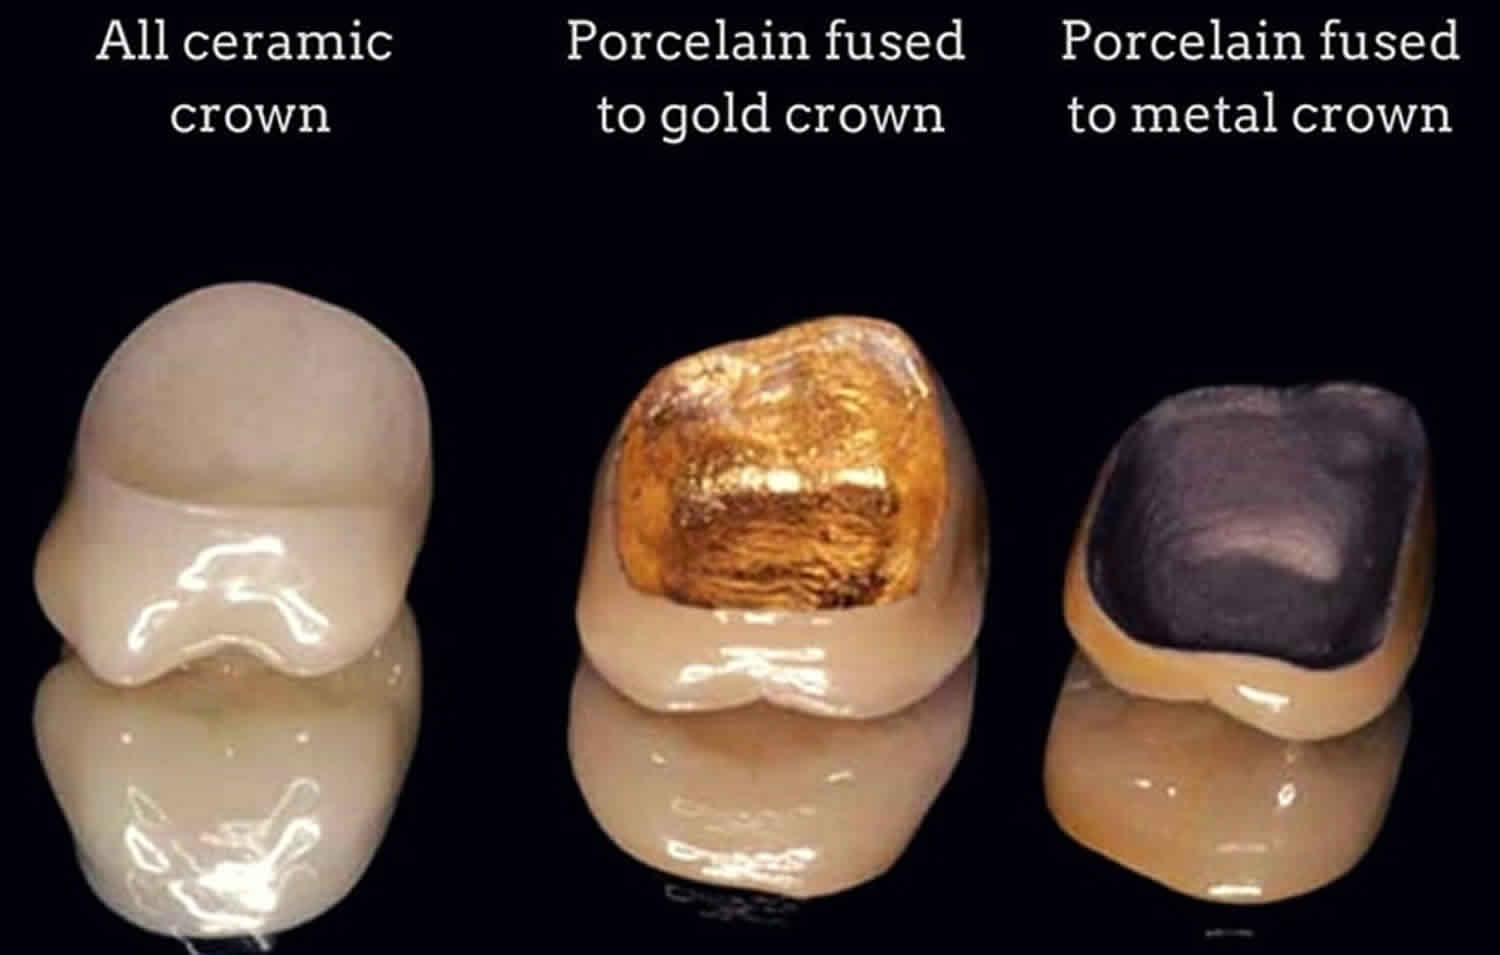 dental crown